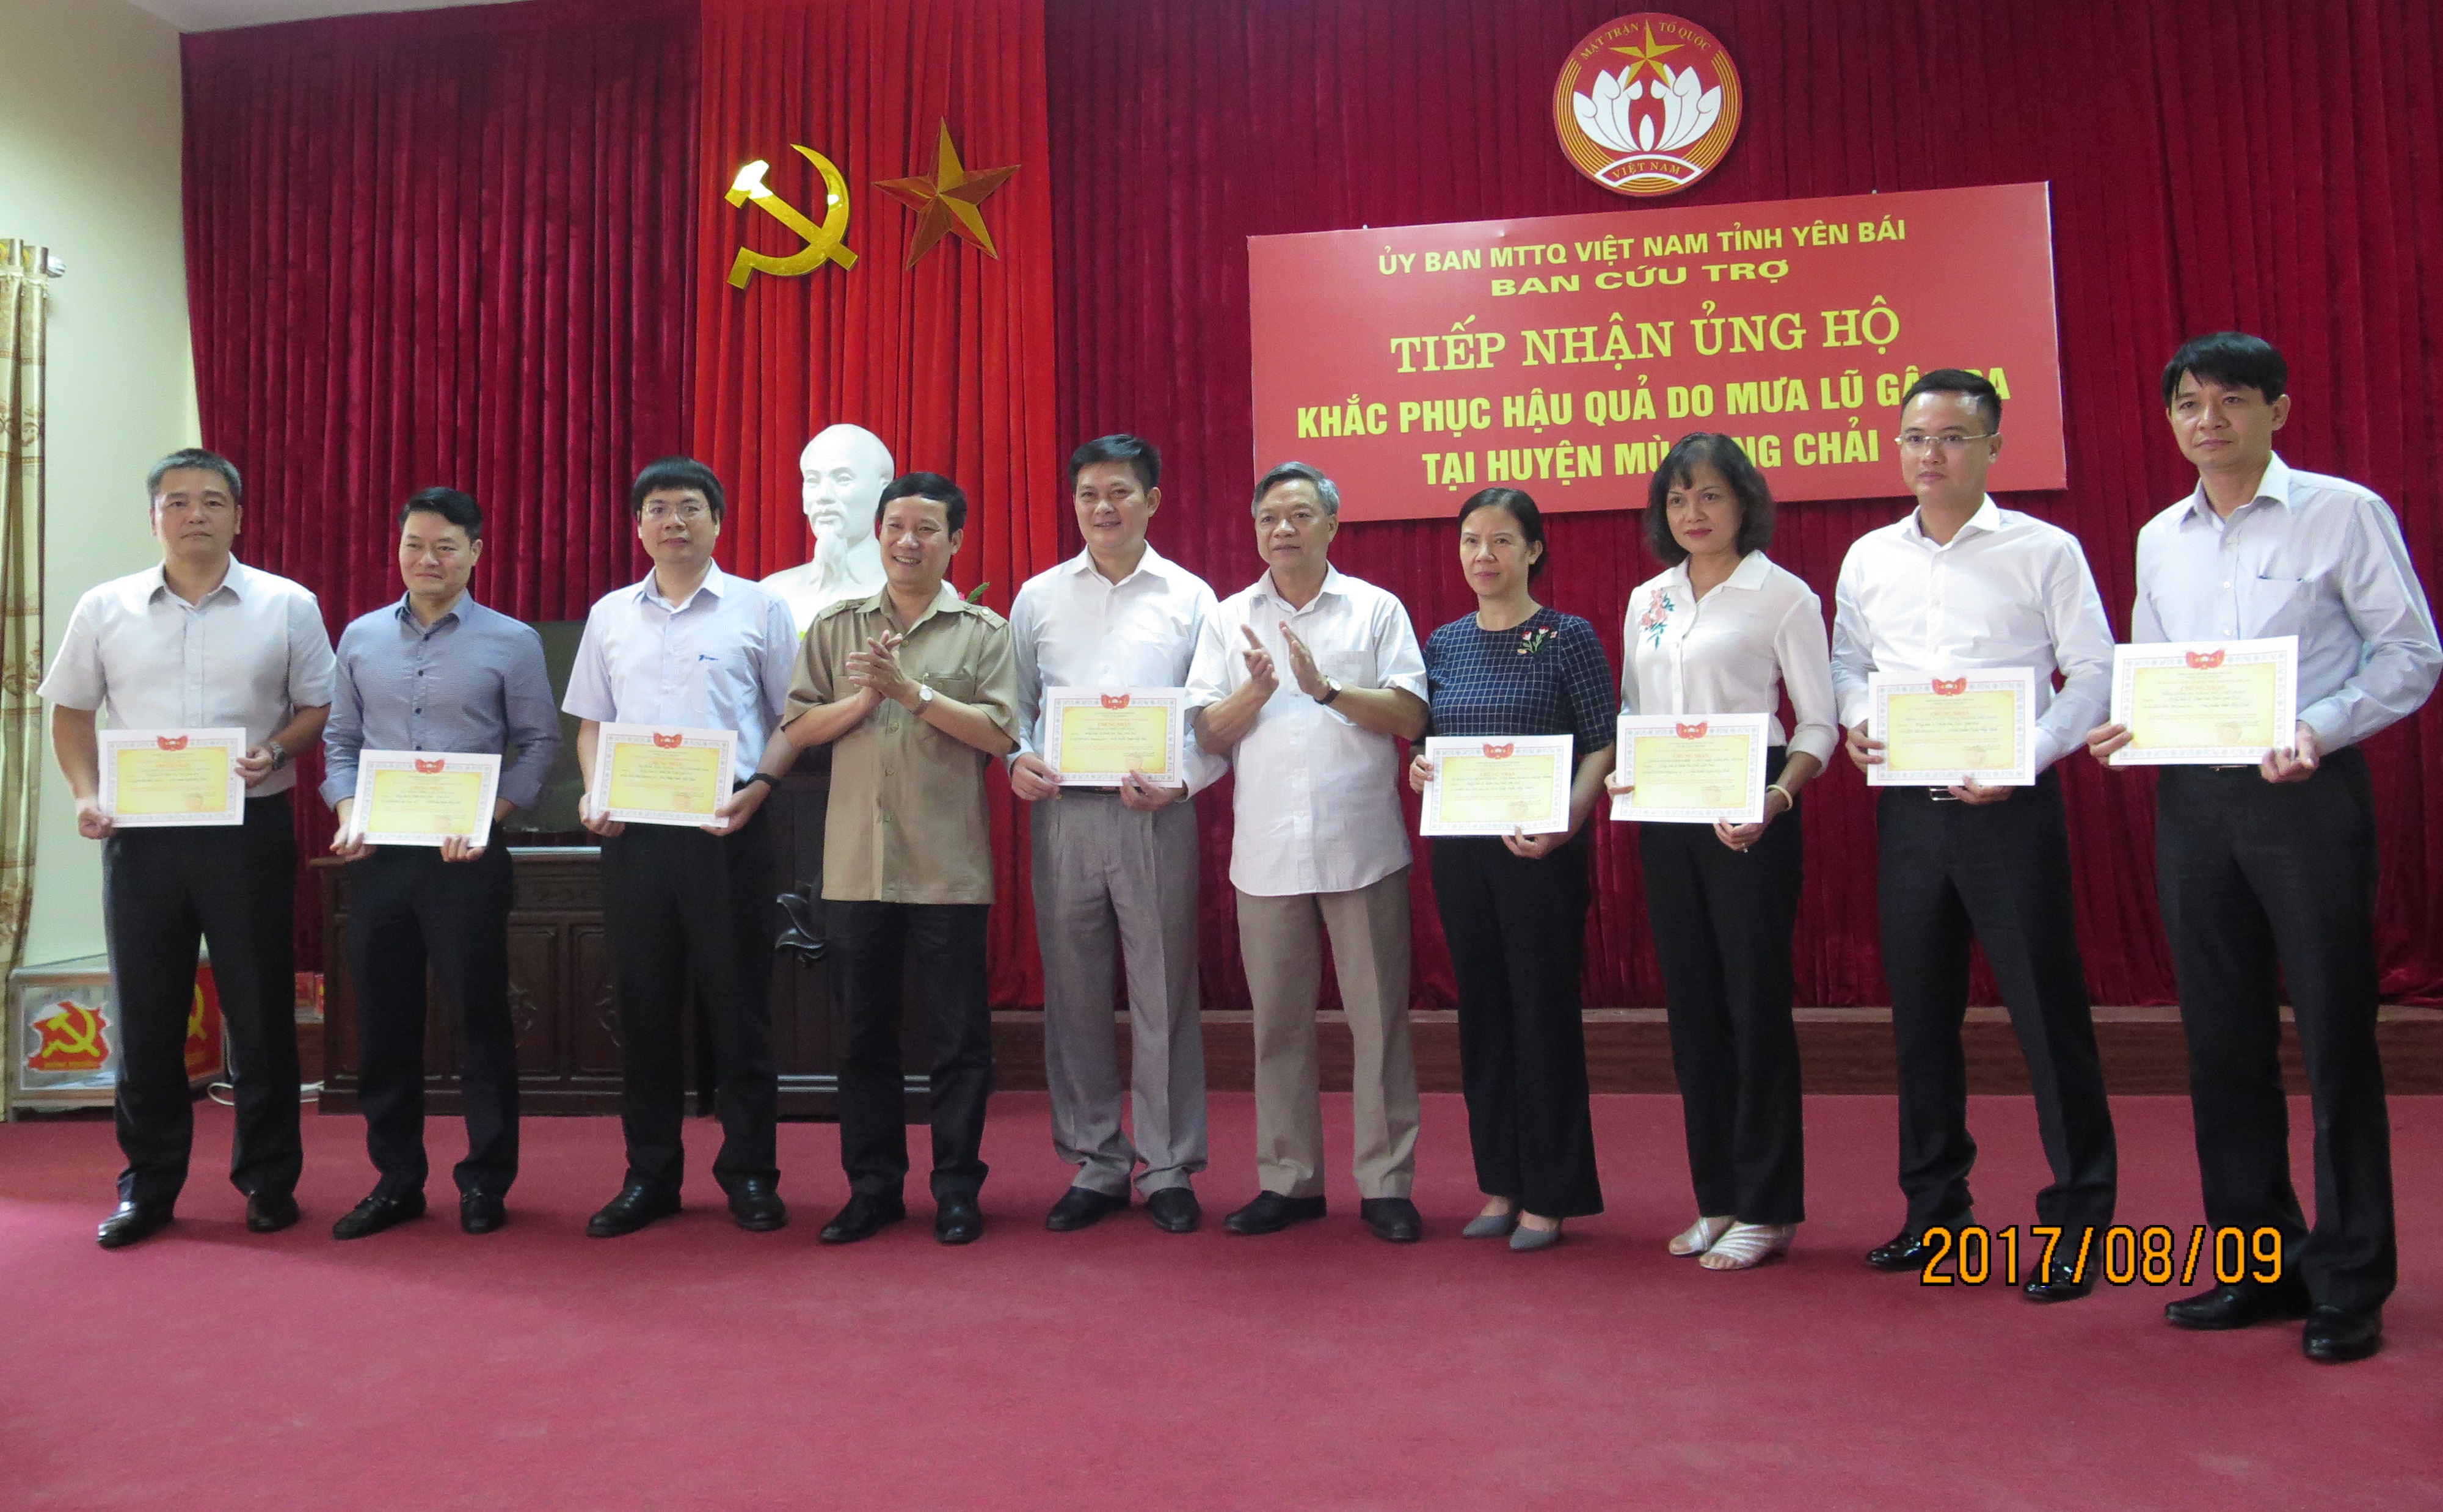 Tỉnh ủy, UBND, Ủy ban MTTQ tỉnh Yên Bái trao Chứng nhận ủng hộ đồng bào bị thiên tai cho đại diện các đơn vị, doanh nghiệp.